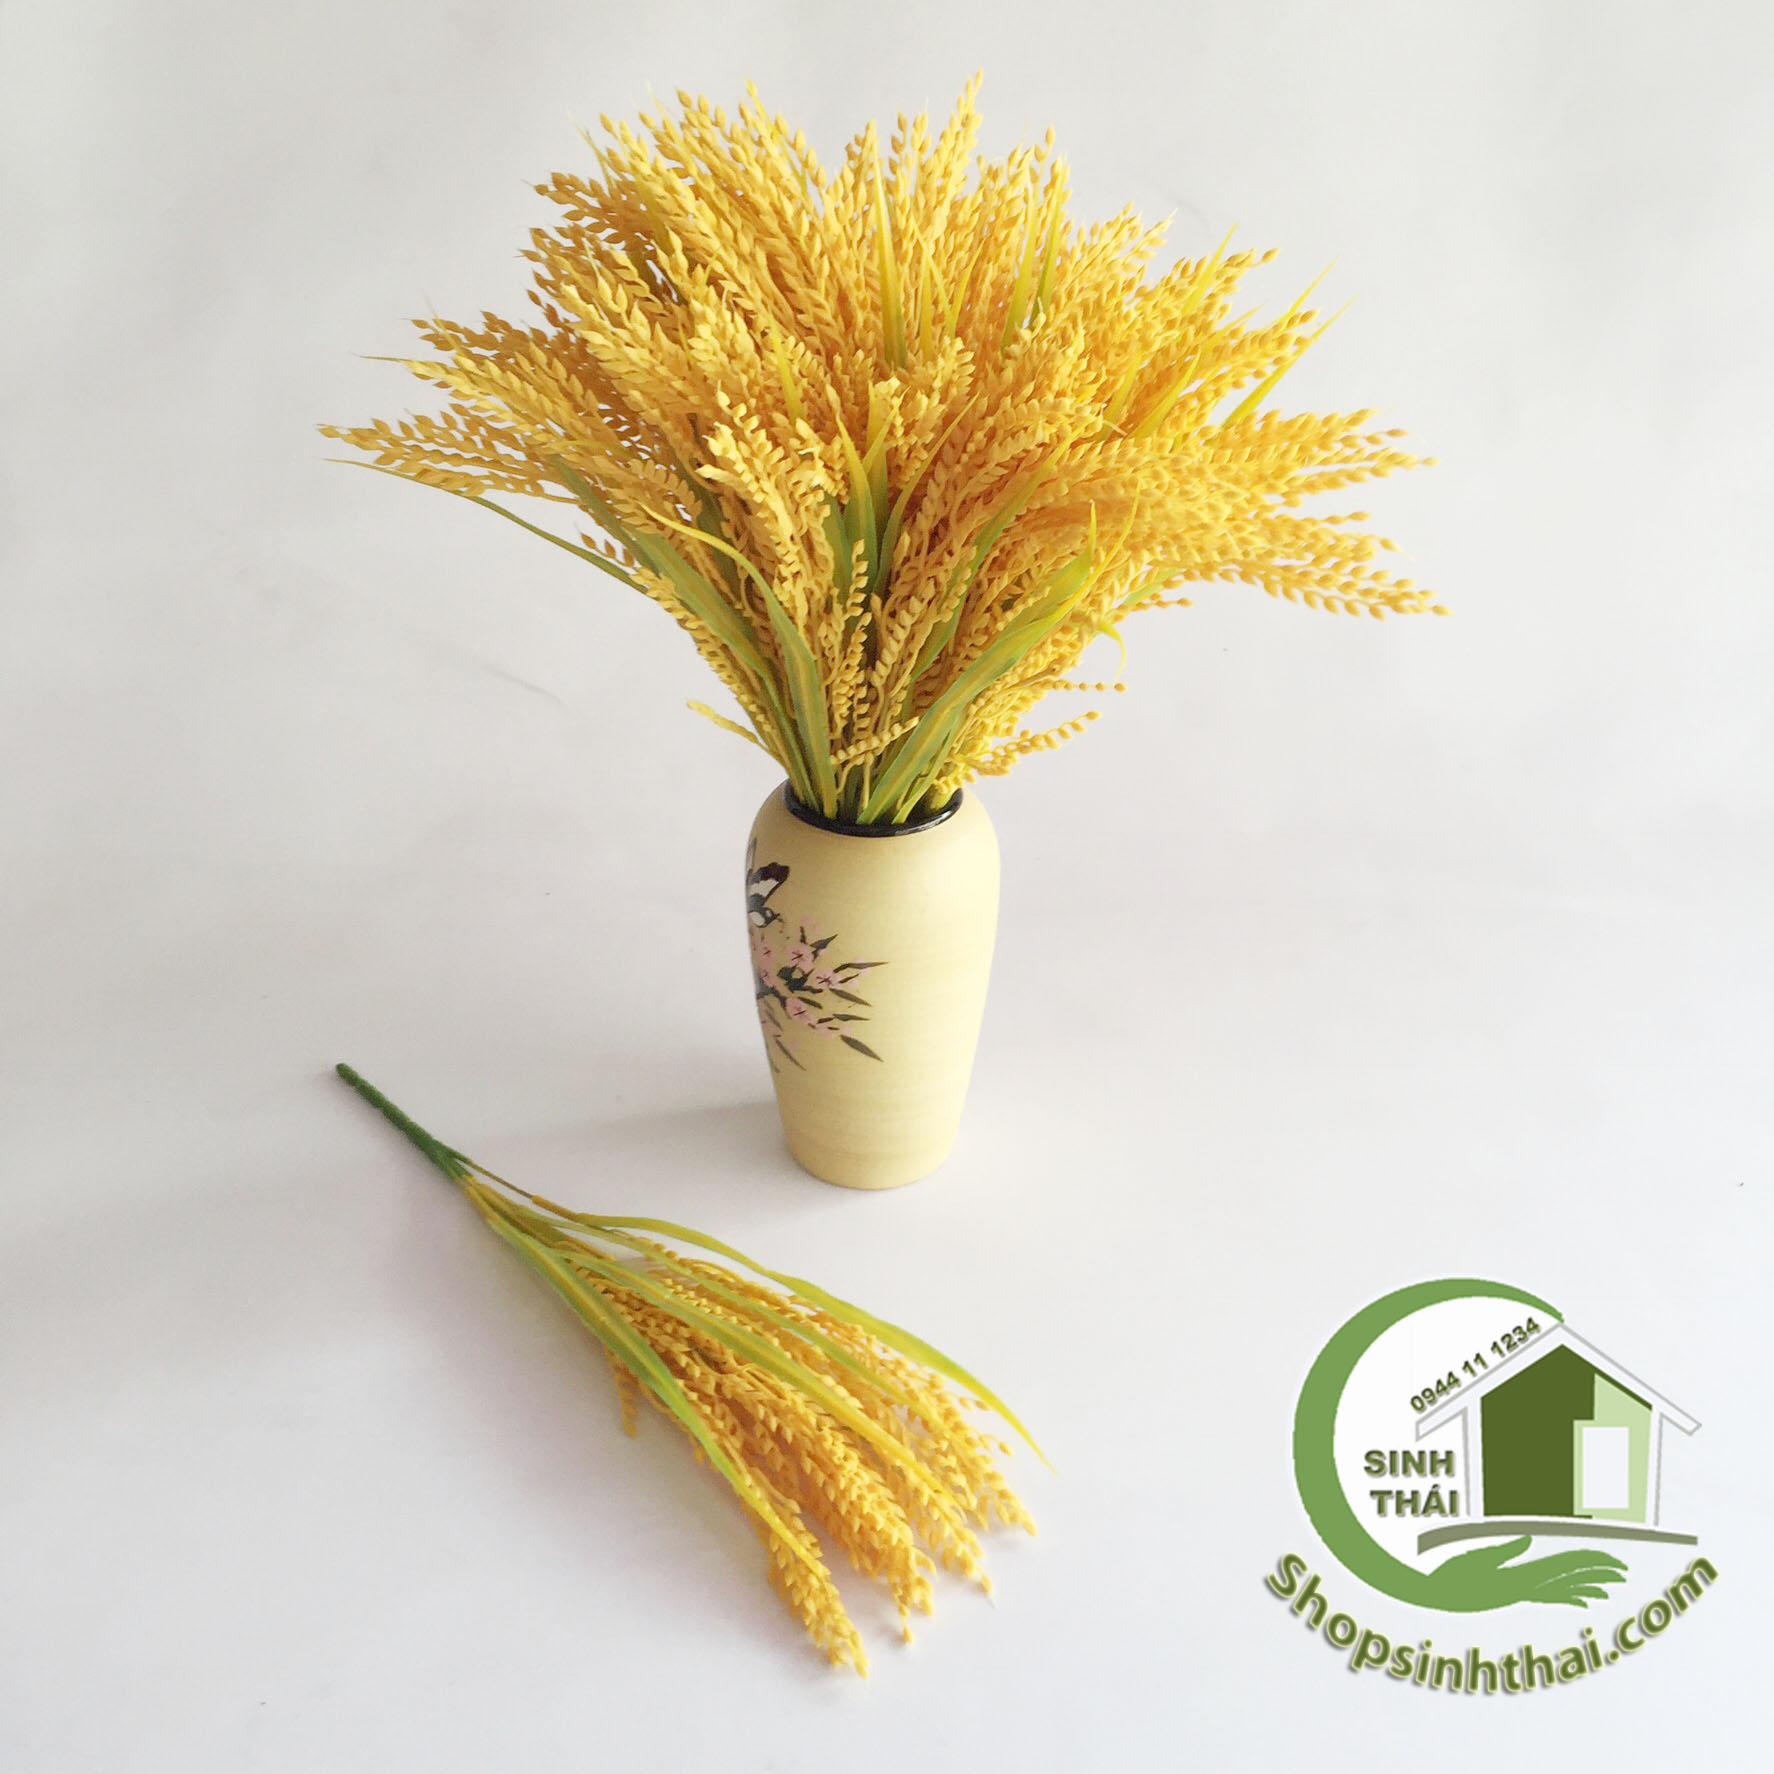 Giảm giá Bụi cây bông lúa vàng - cây hoa giả cao cấp - BeeCost